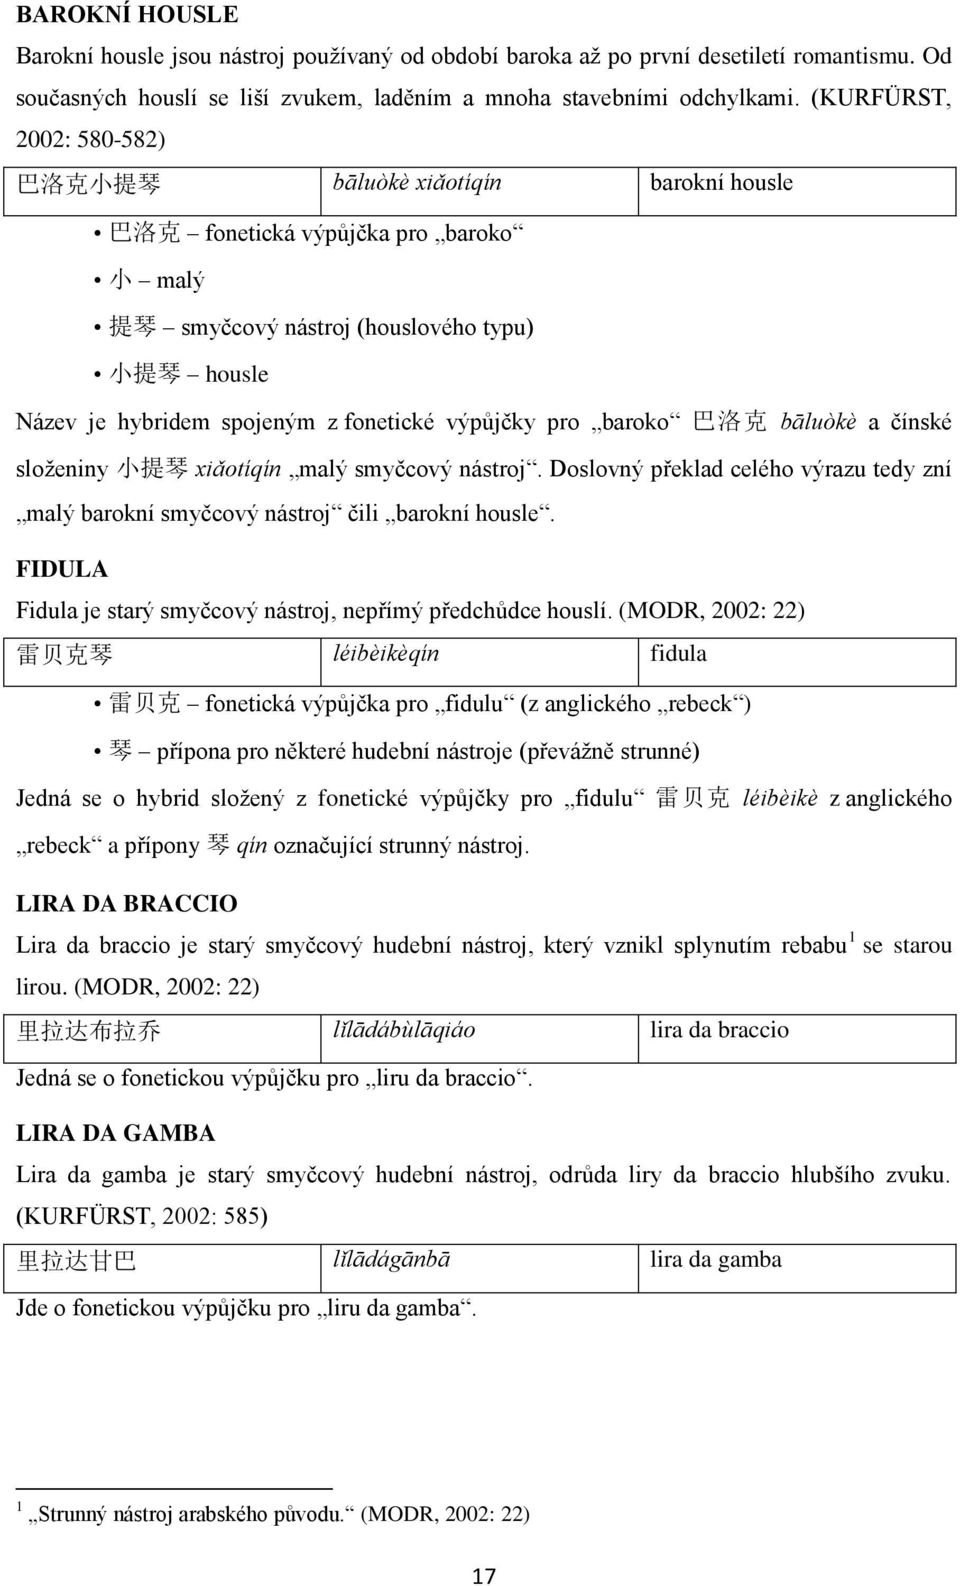 BAKALÁŘSKÁ DIPLOMOVÁ PRÁCE. Lexikologická analýza čínštiny: Hudební nástroje  - PDF Free Download